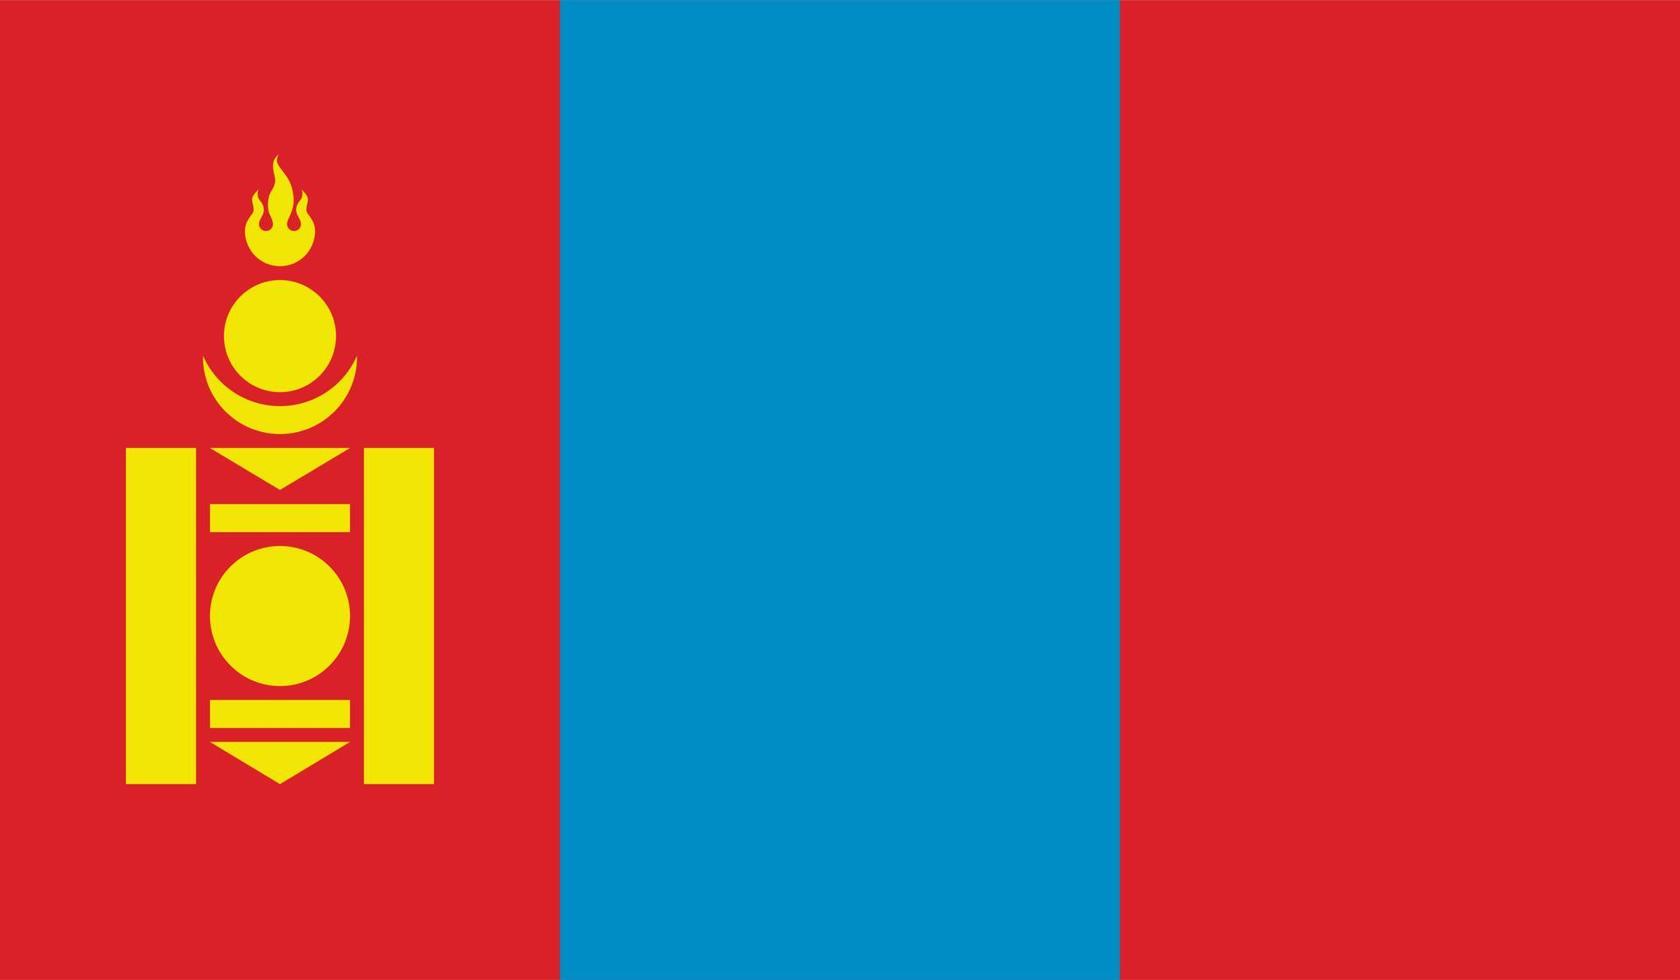 Flaggenbild der Mongolei vektor